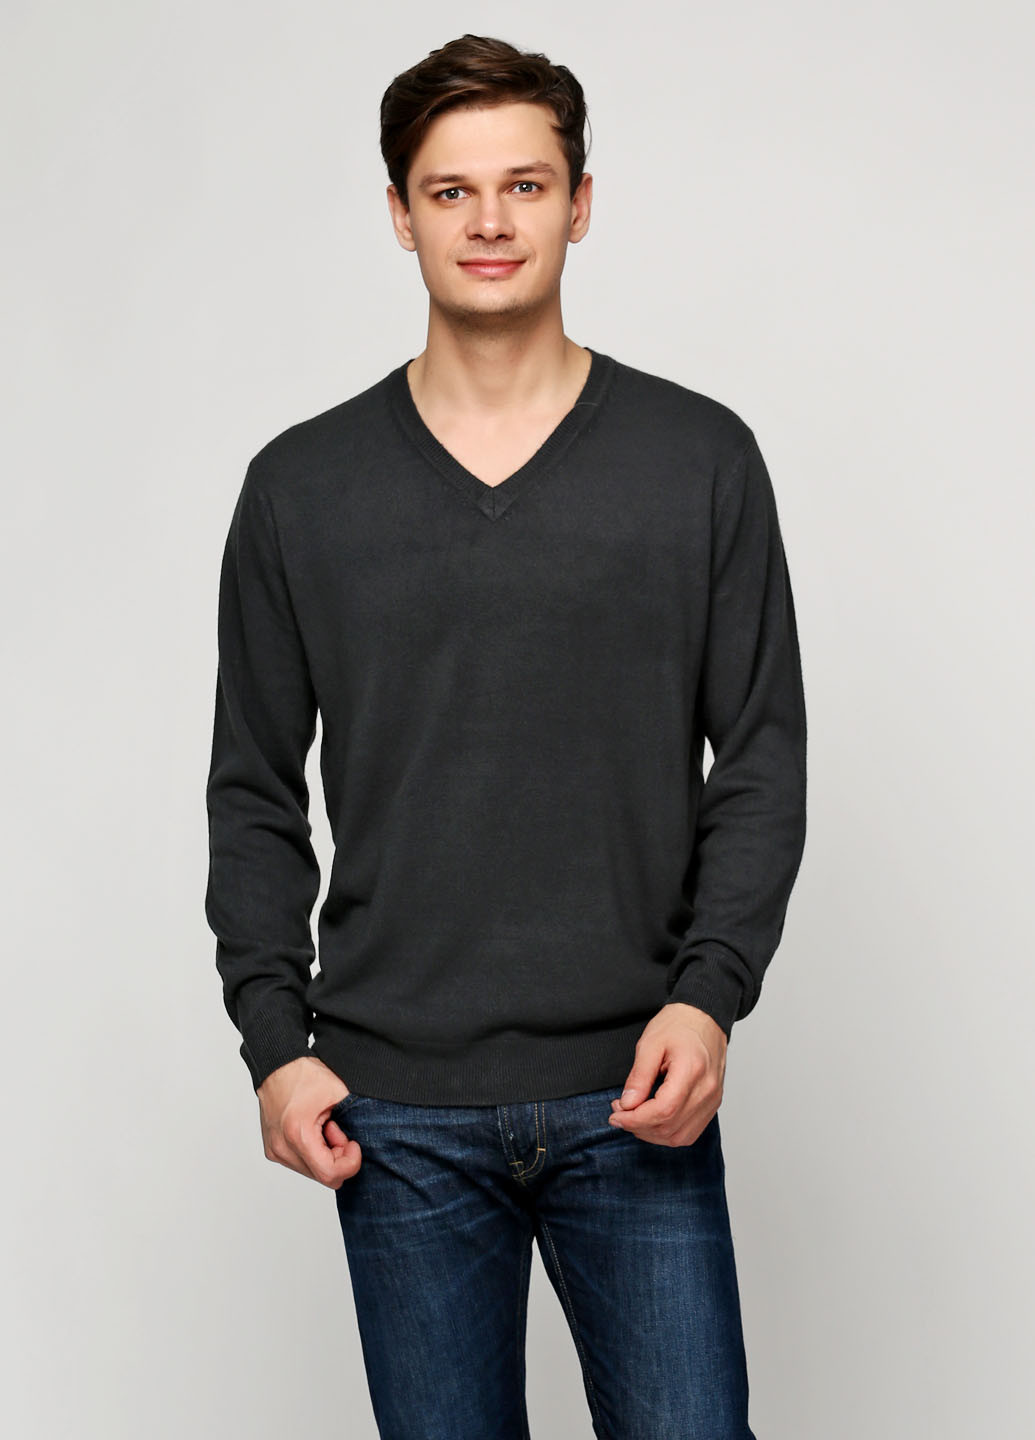 Грифельно-серый демисезонный пуловер пуловер Alcott